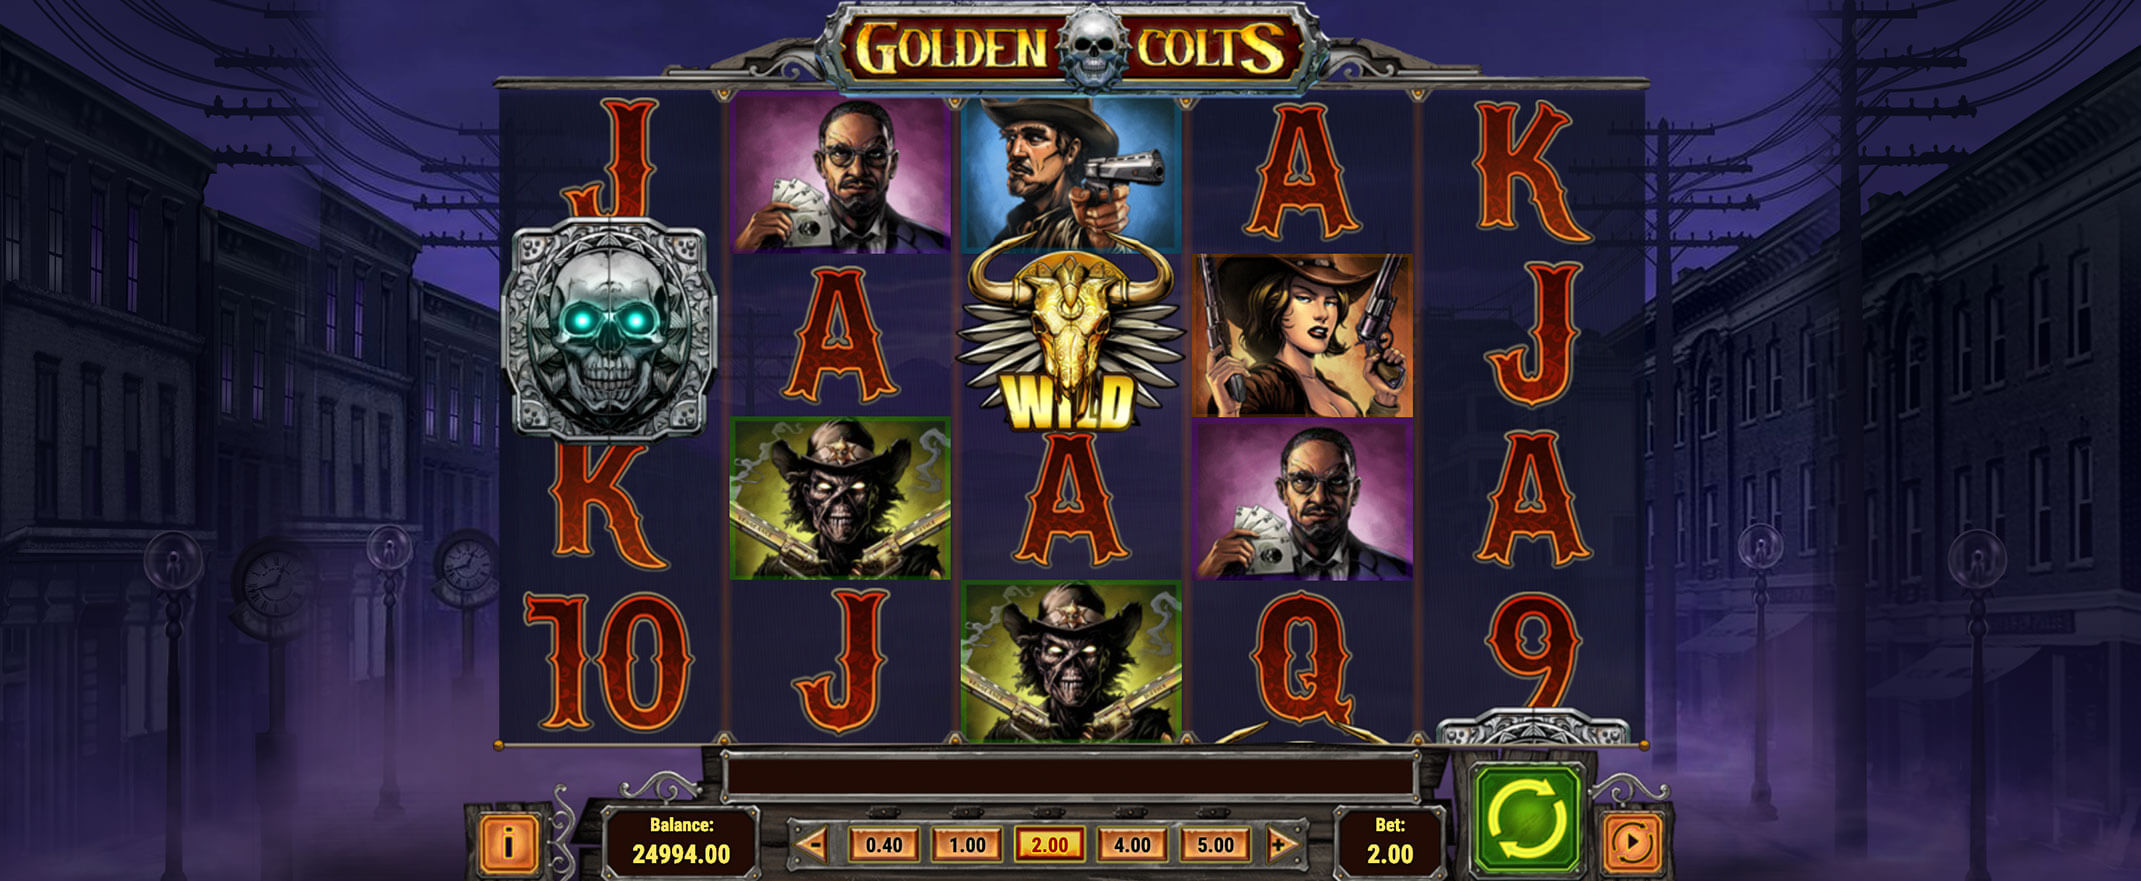 Golden Colts casinospel